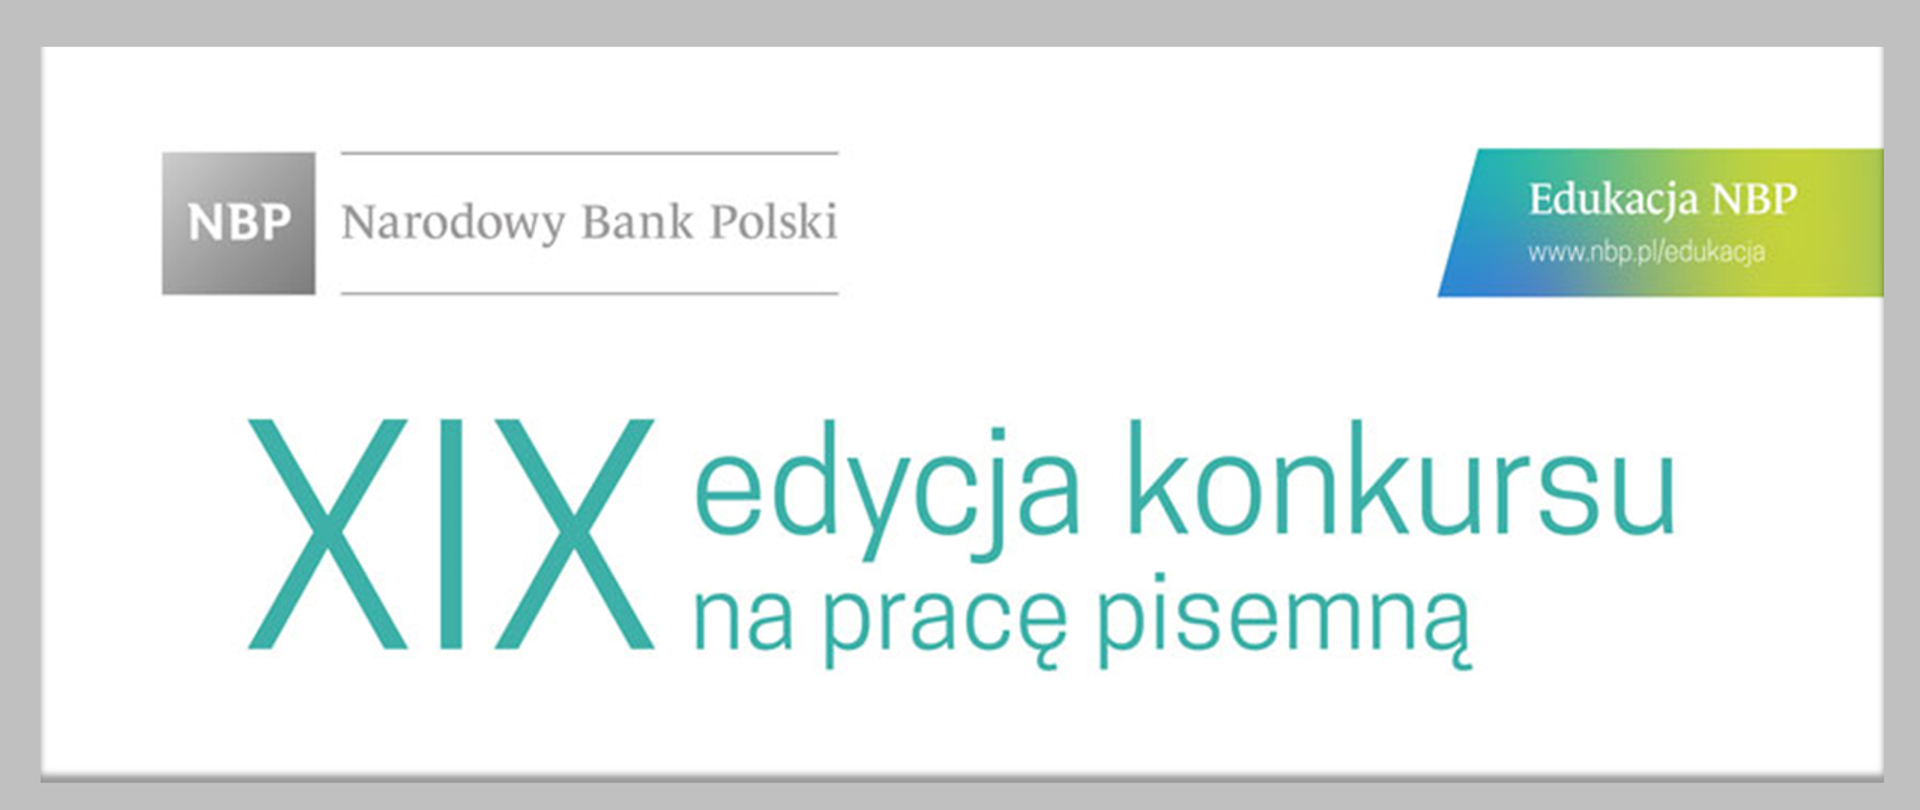 Jasna grafika z logo NBP i tekstem "XIX edycja konkursu na pracę pisemną"